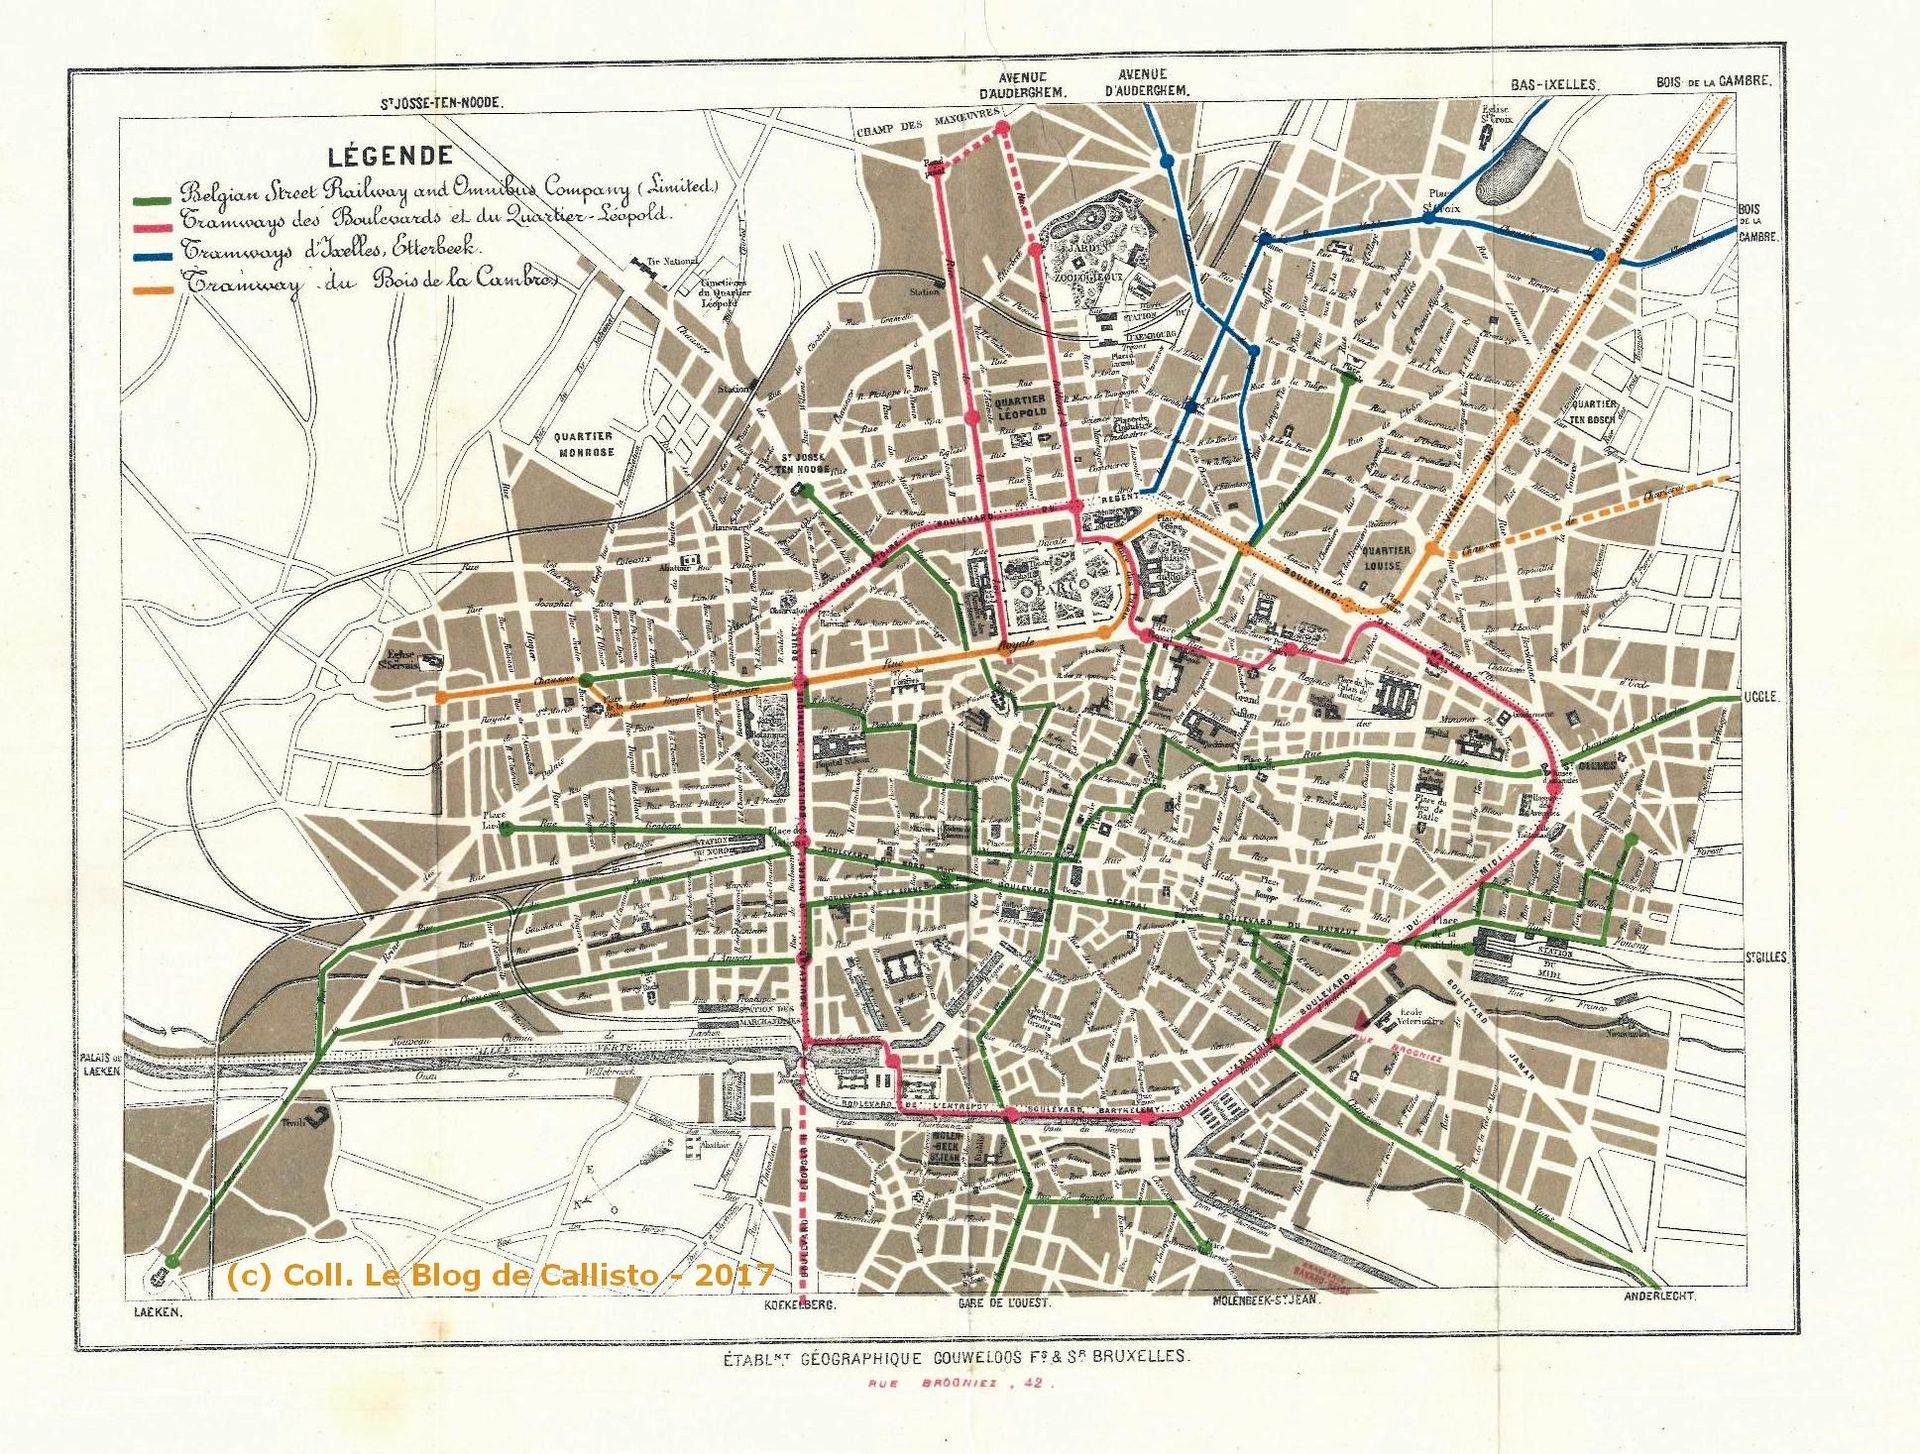 Plan du réseau de transport de Bruxelles en 1874.